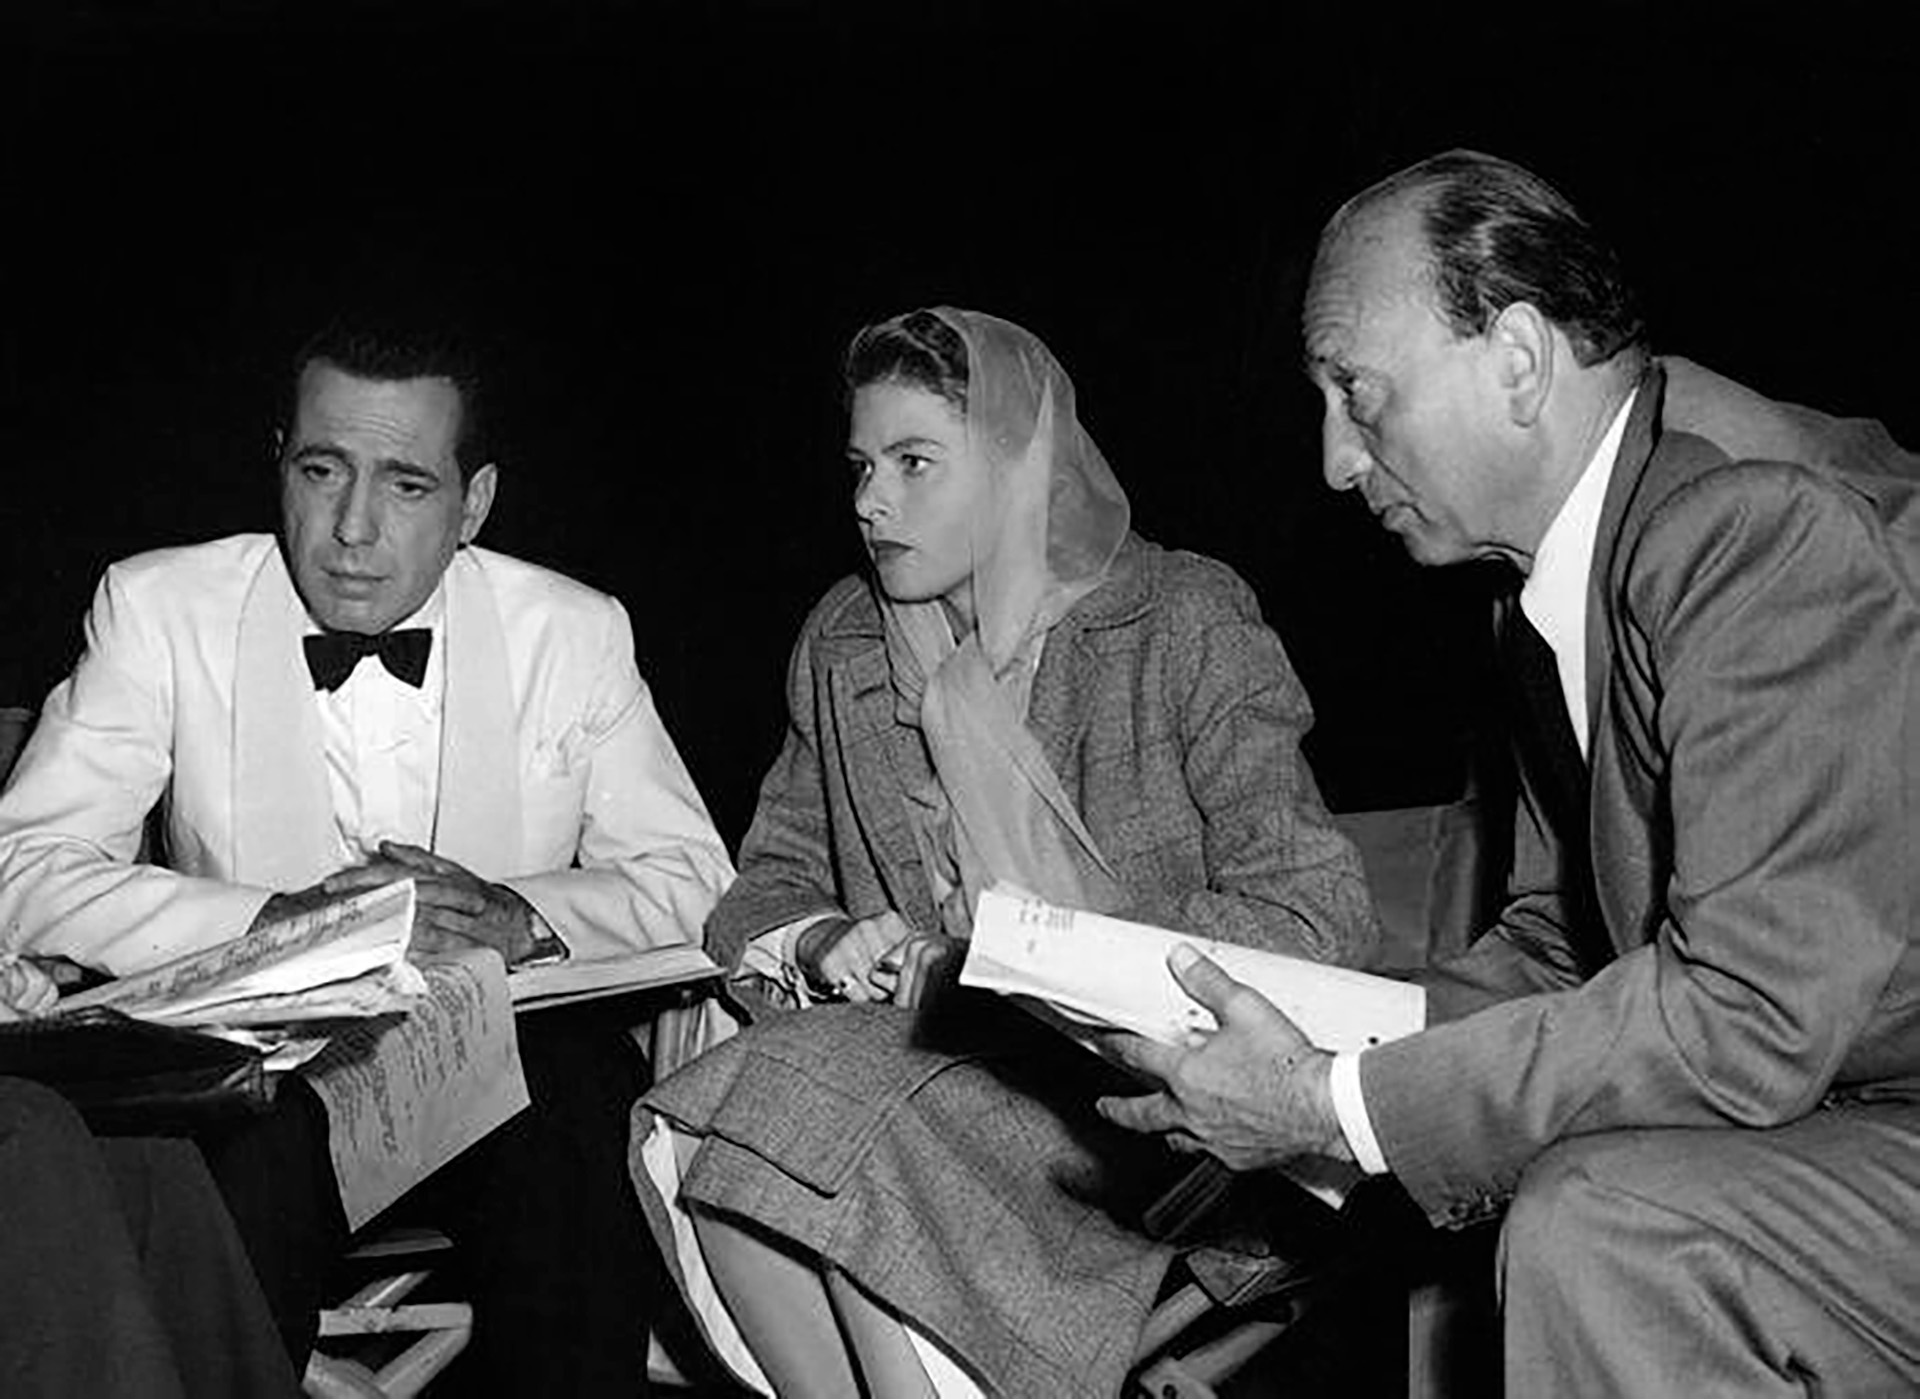 La relación entre Humphrey Bogart e Ingrid Bergman no fue la mejor. La esposa de Bogart, Mayo Merthot sospechaba que mantenían un romance y apareció de improviso varias veces en el rodaje